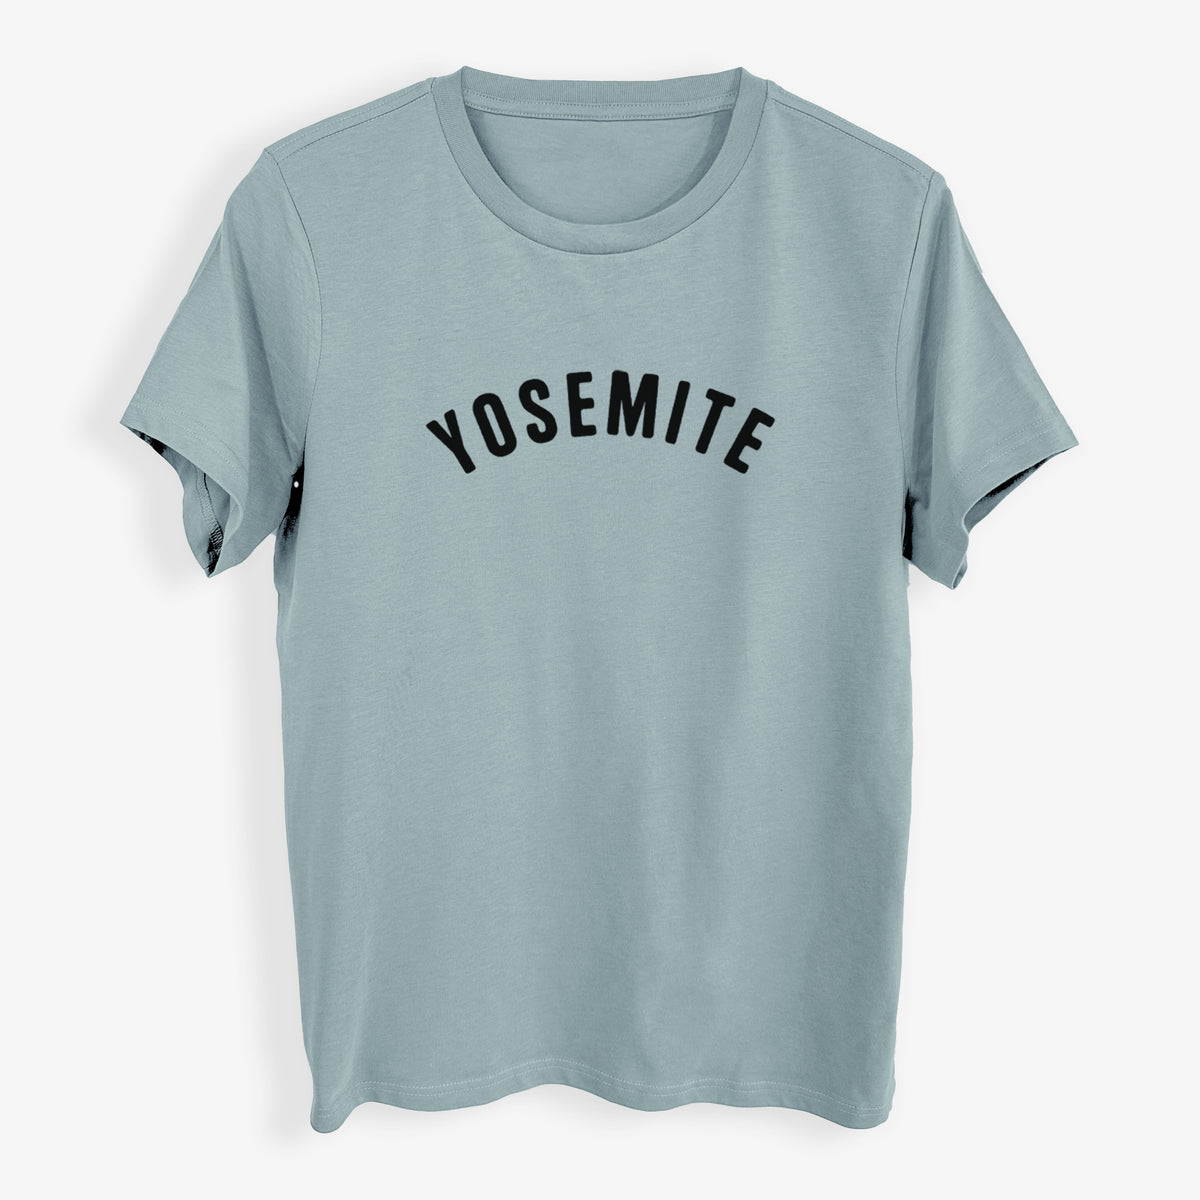 Yosemite - Womens Everyday Maple Tee